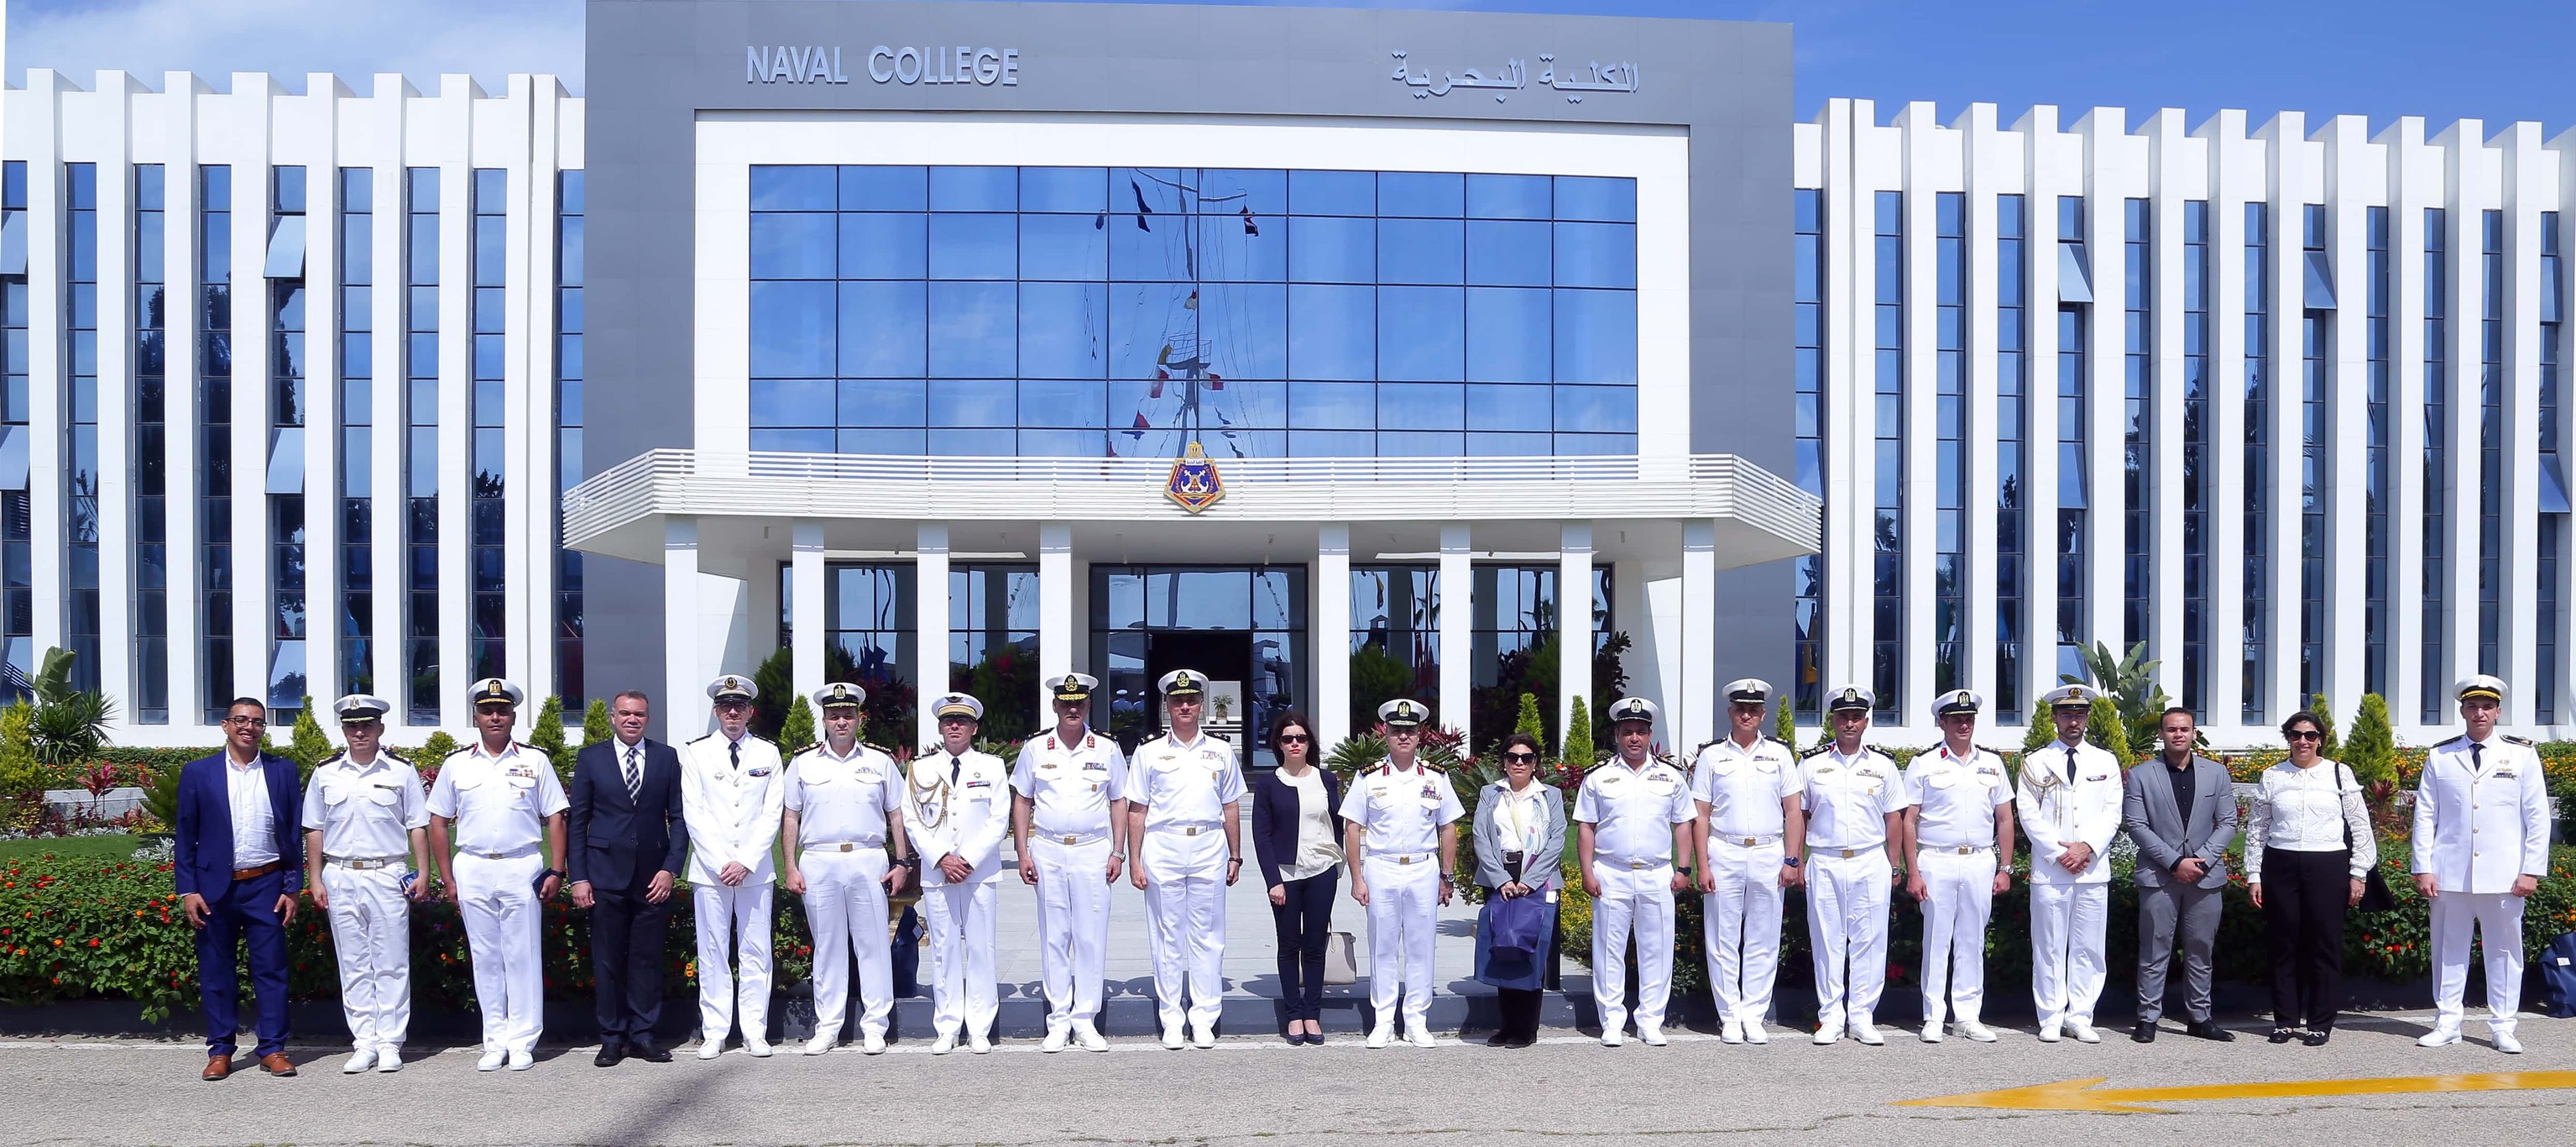 الأكاديمية العسكرية تسلم شهادات اختبارات اللغة الفرنسية لضباط وطلاب البحرية شاهد الصور - بوابة البلد